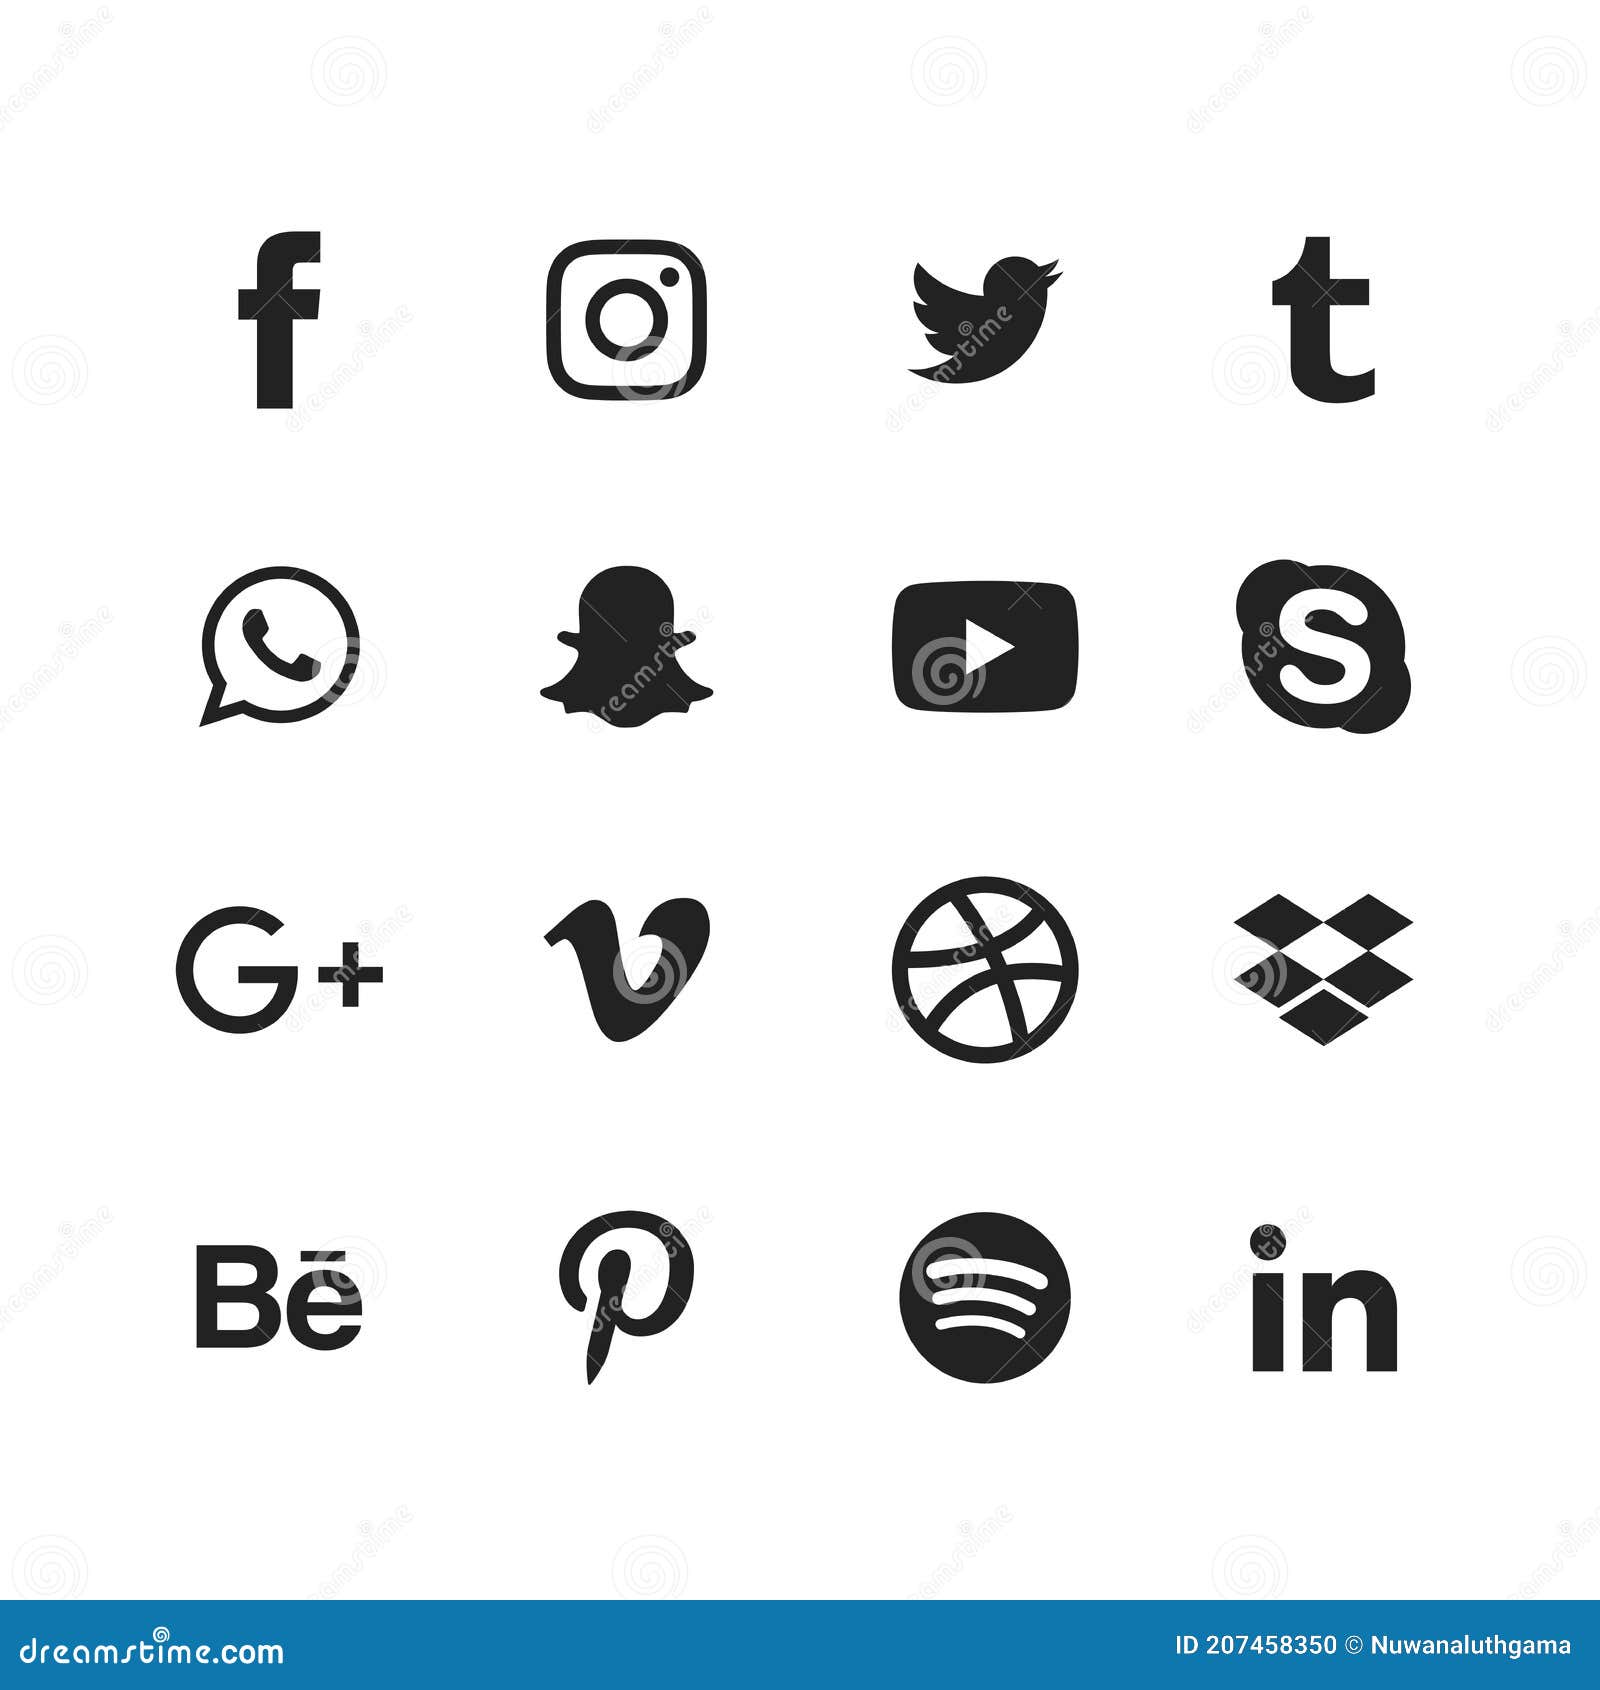 Social Media Logo - Free Vectors & PSDs to Download